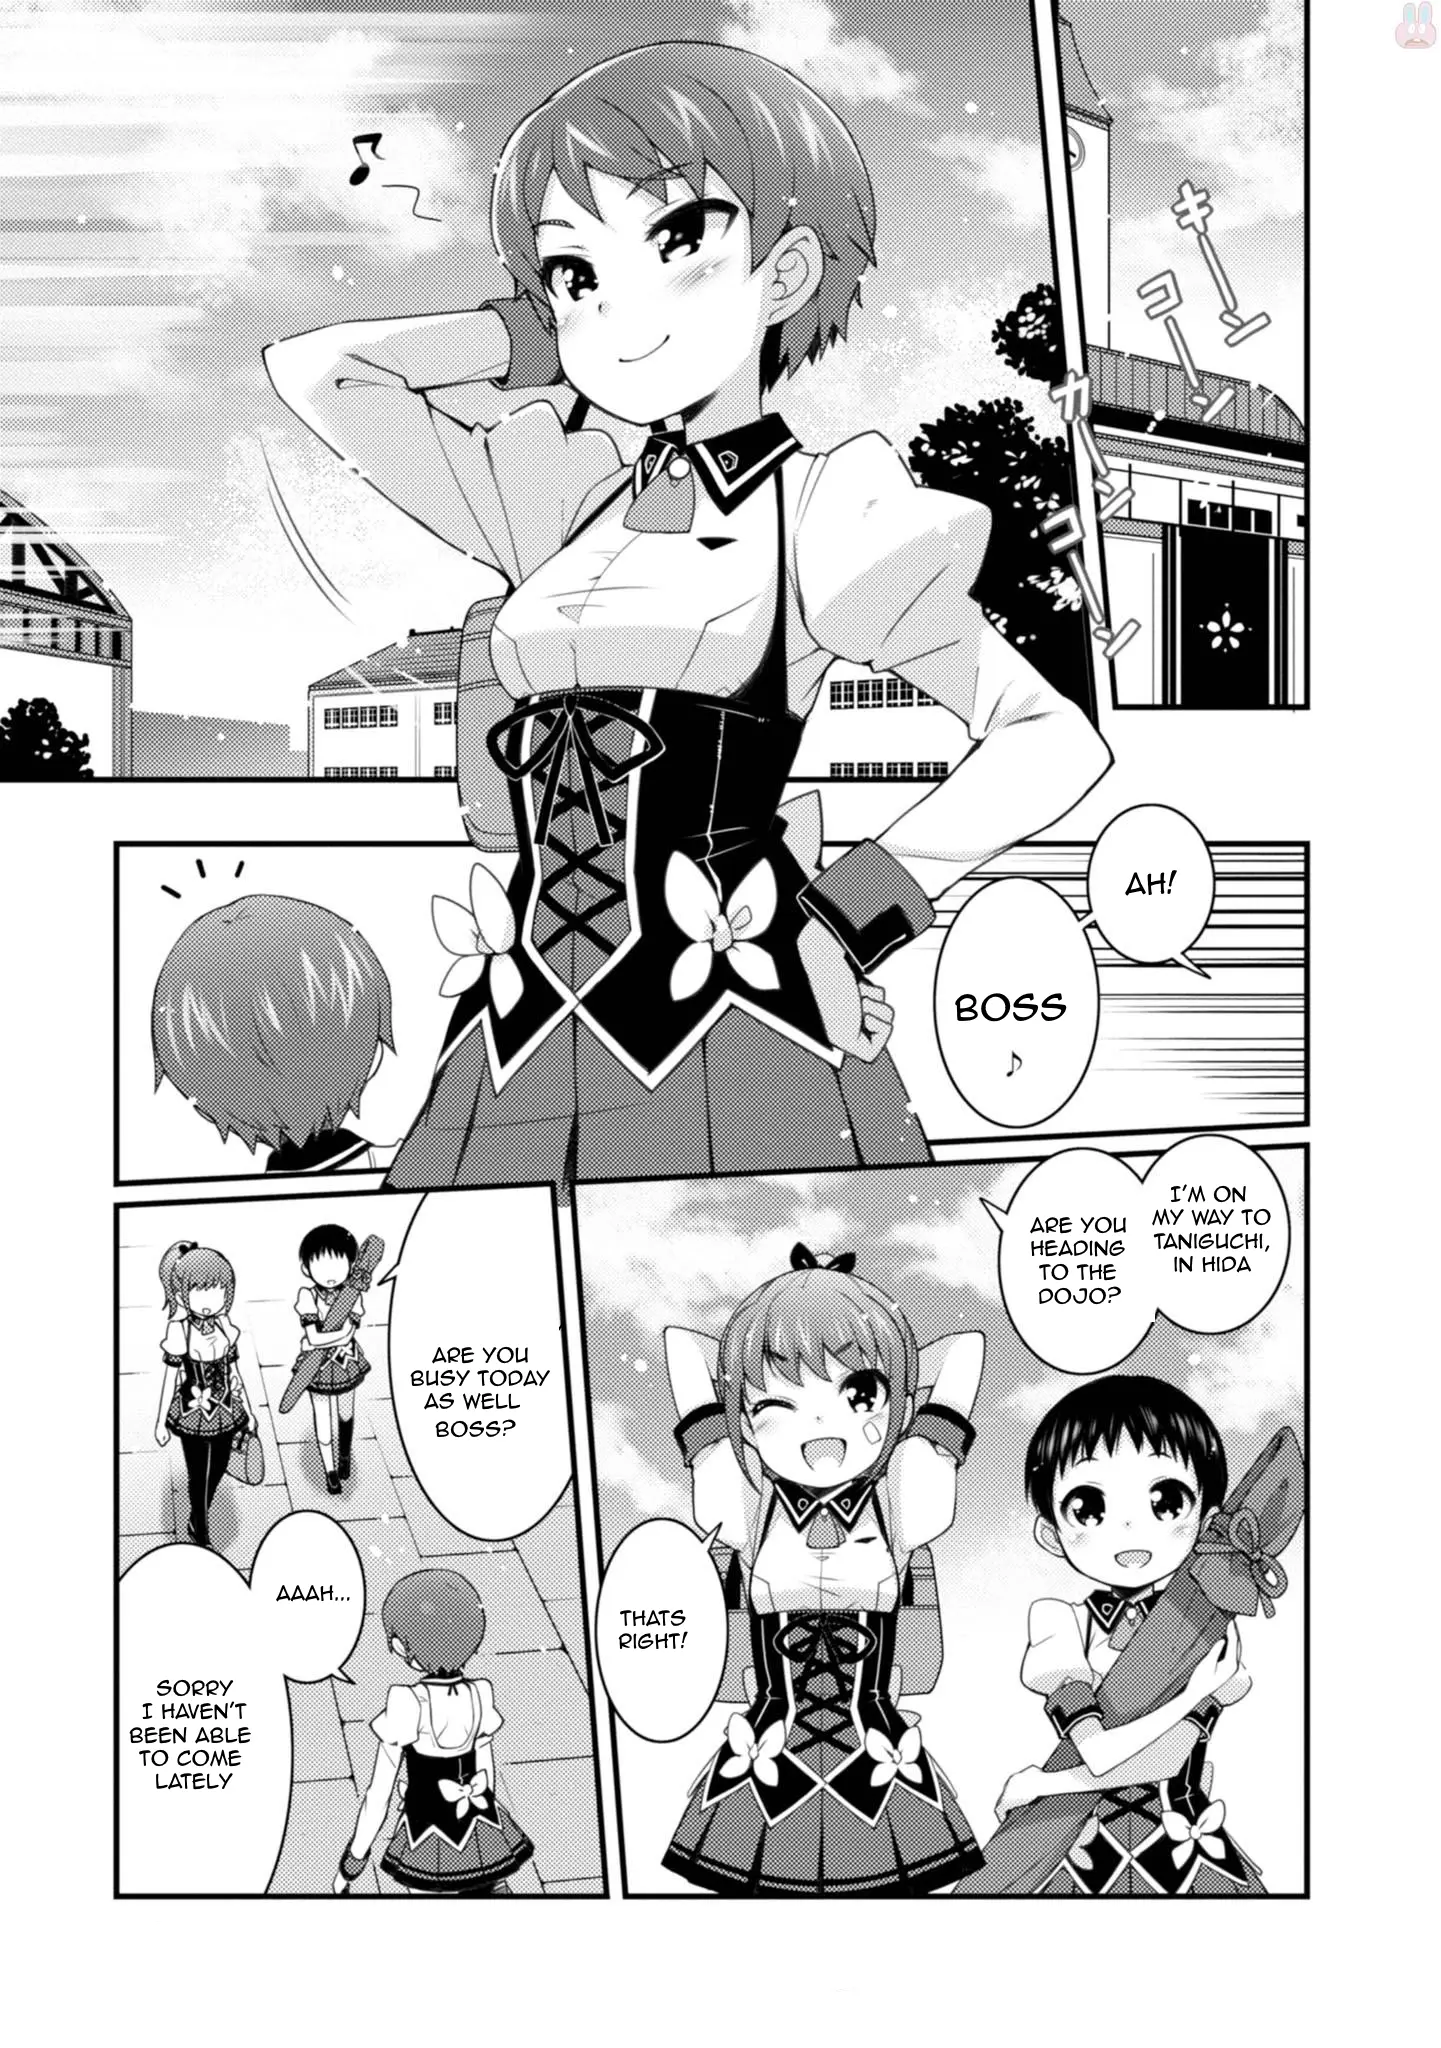 Sakura Nadeshiko - 11 page 1-19a92d90